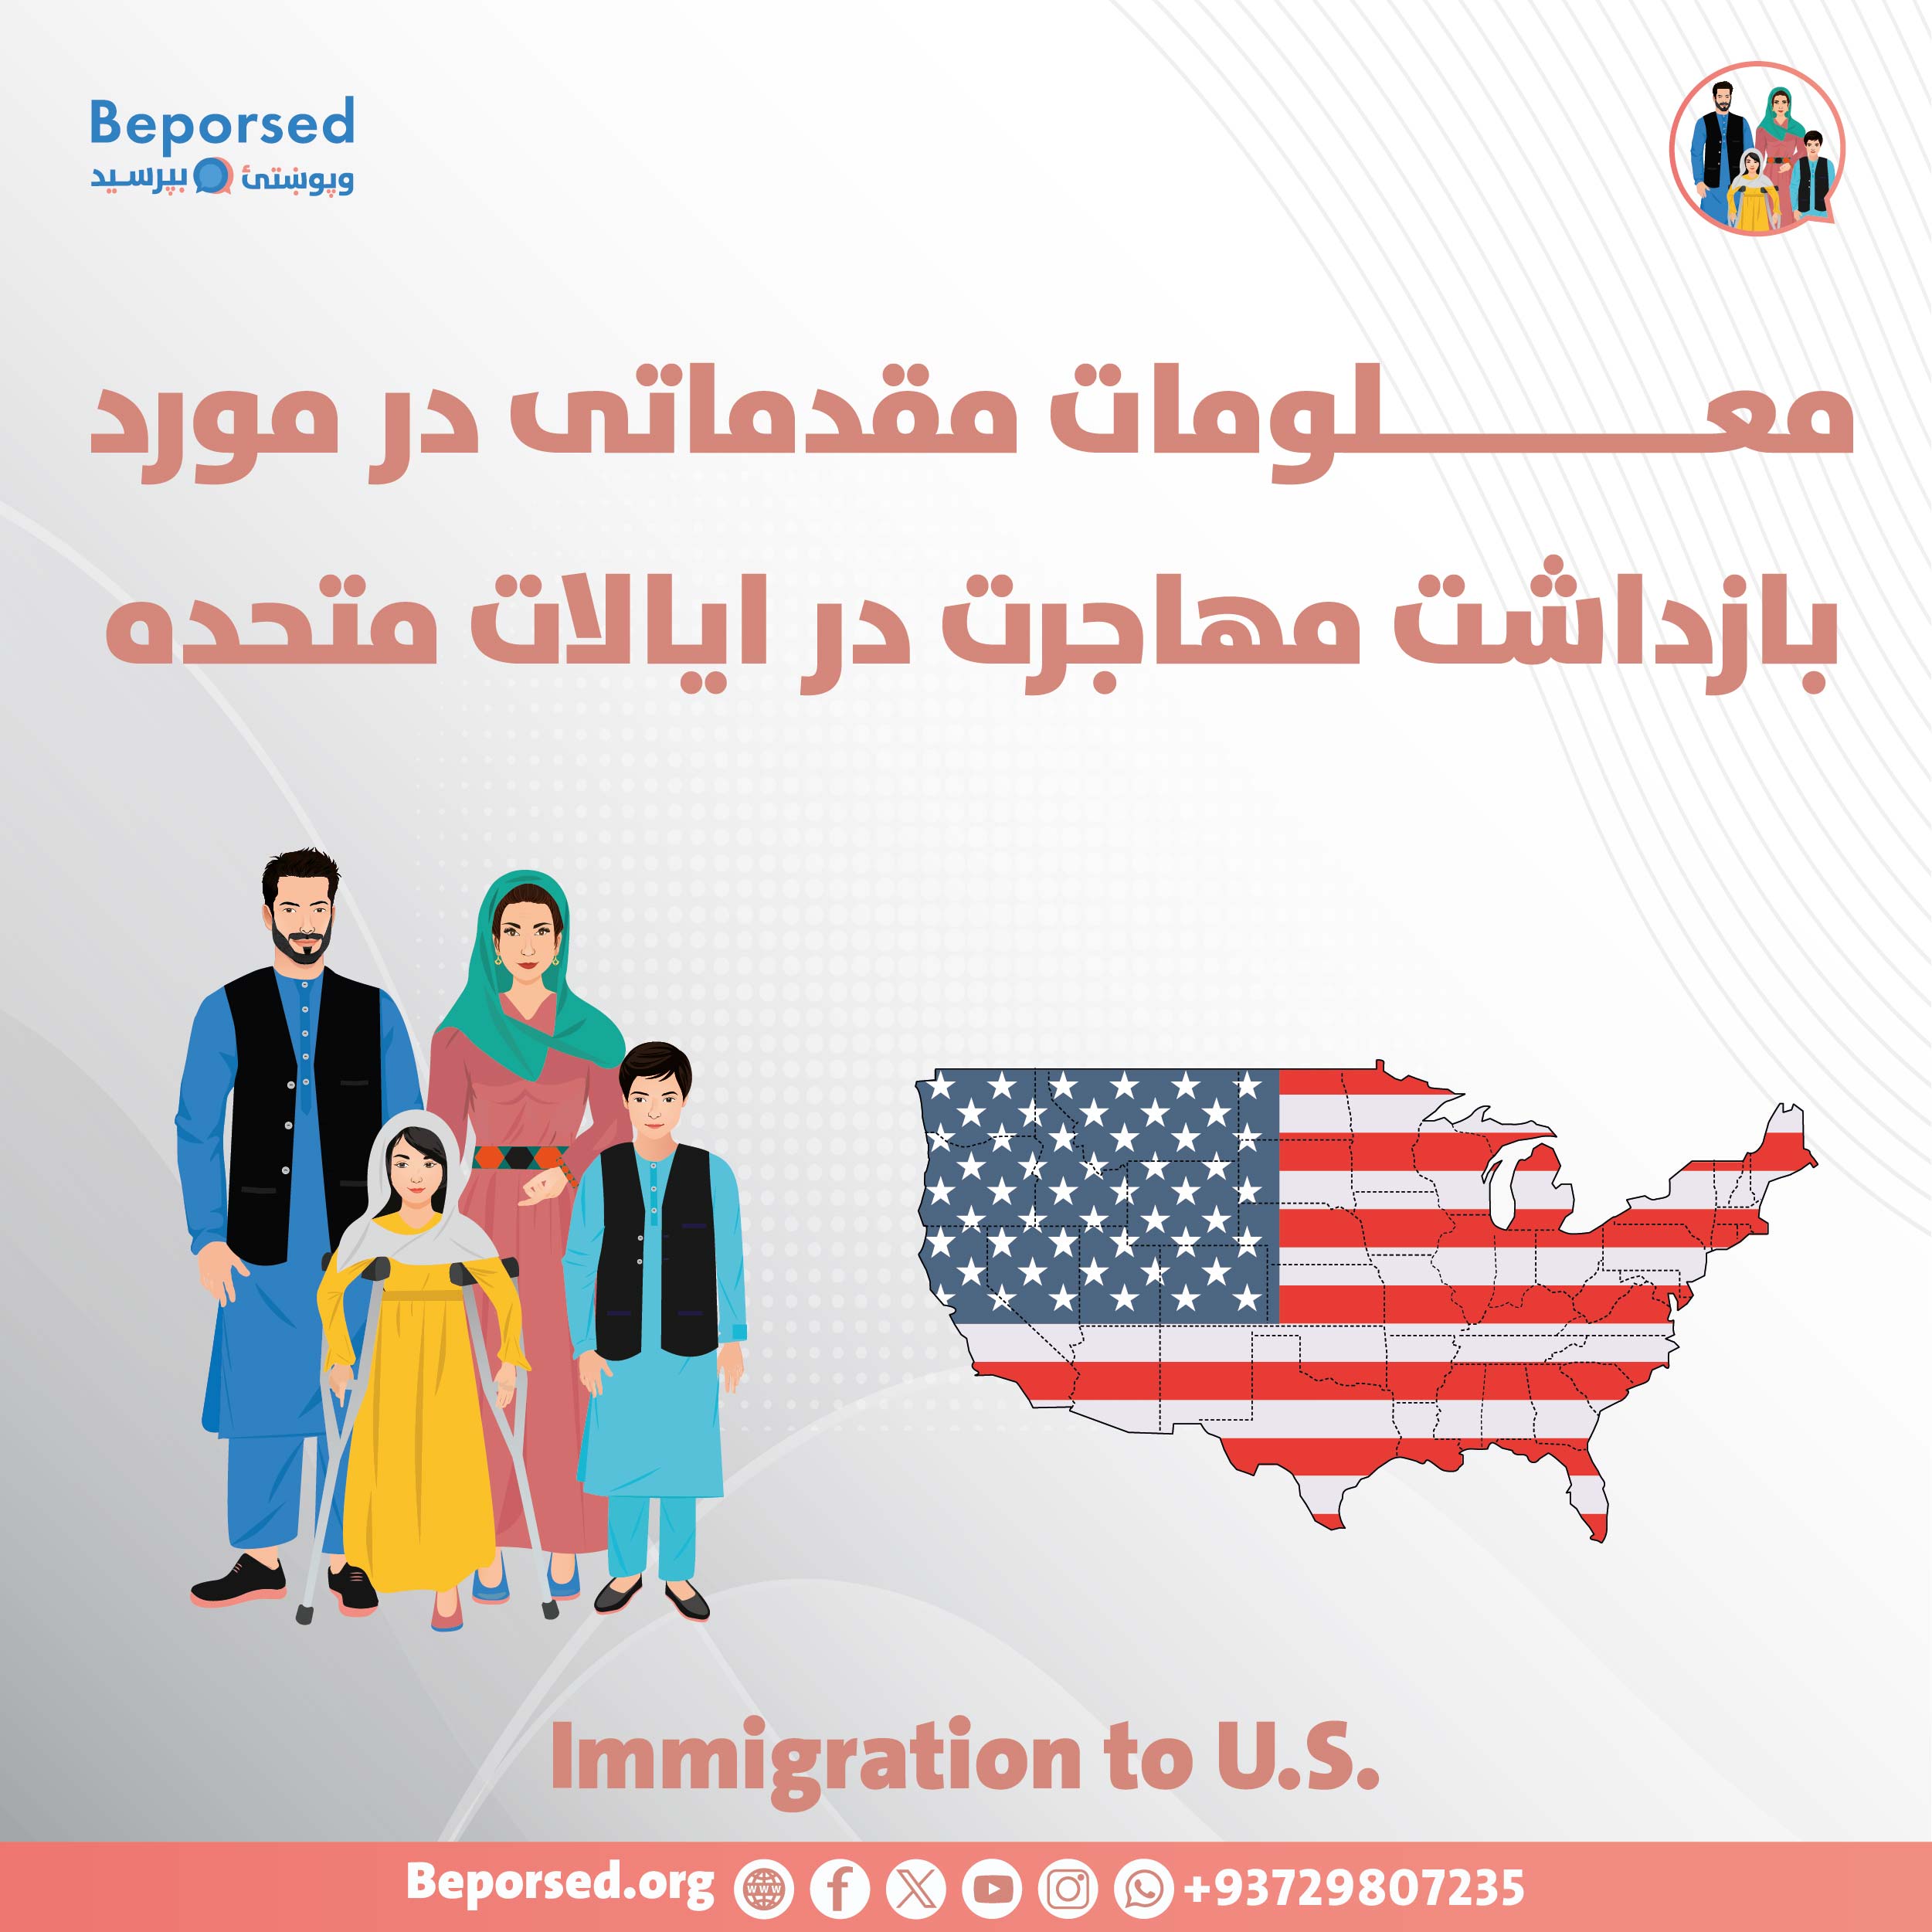 معـــــــــــــلومات مقدماتی در مورد بازداشت مهاجرت در ایالات متحده-01.jpg